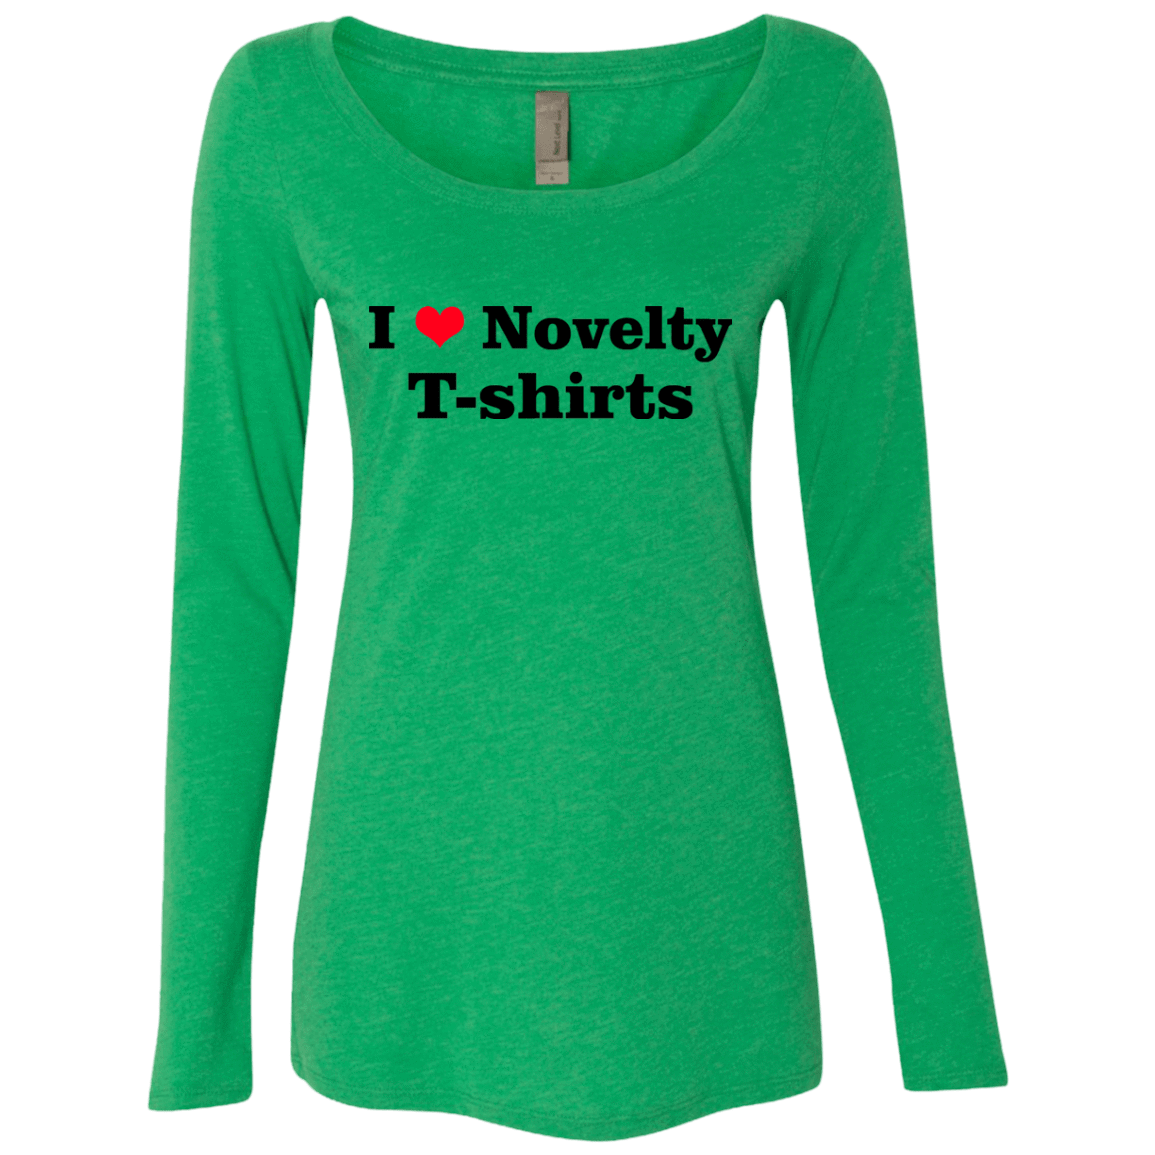 T-Shirts Envy / Small Love Shirts Women's Triblend Long Sleeve Shirt